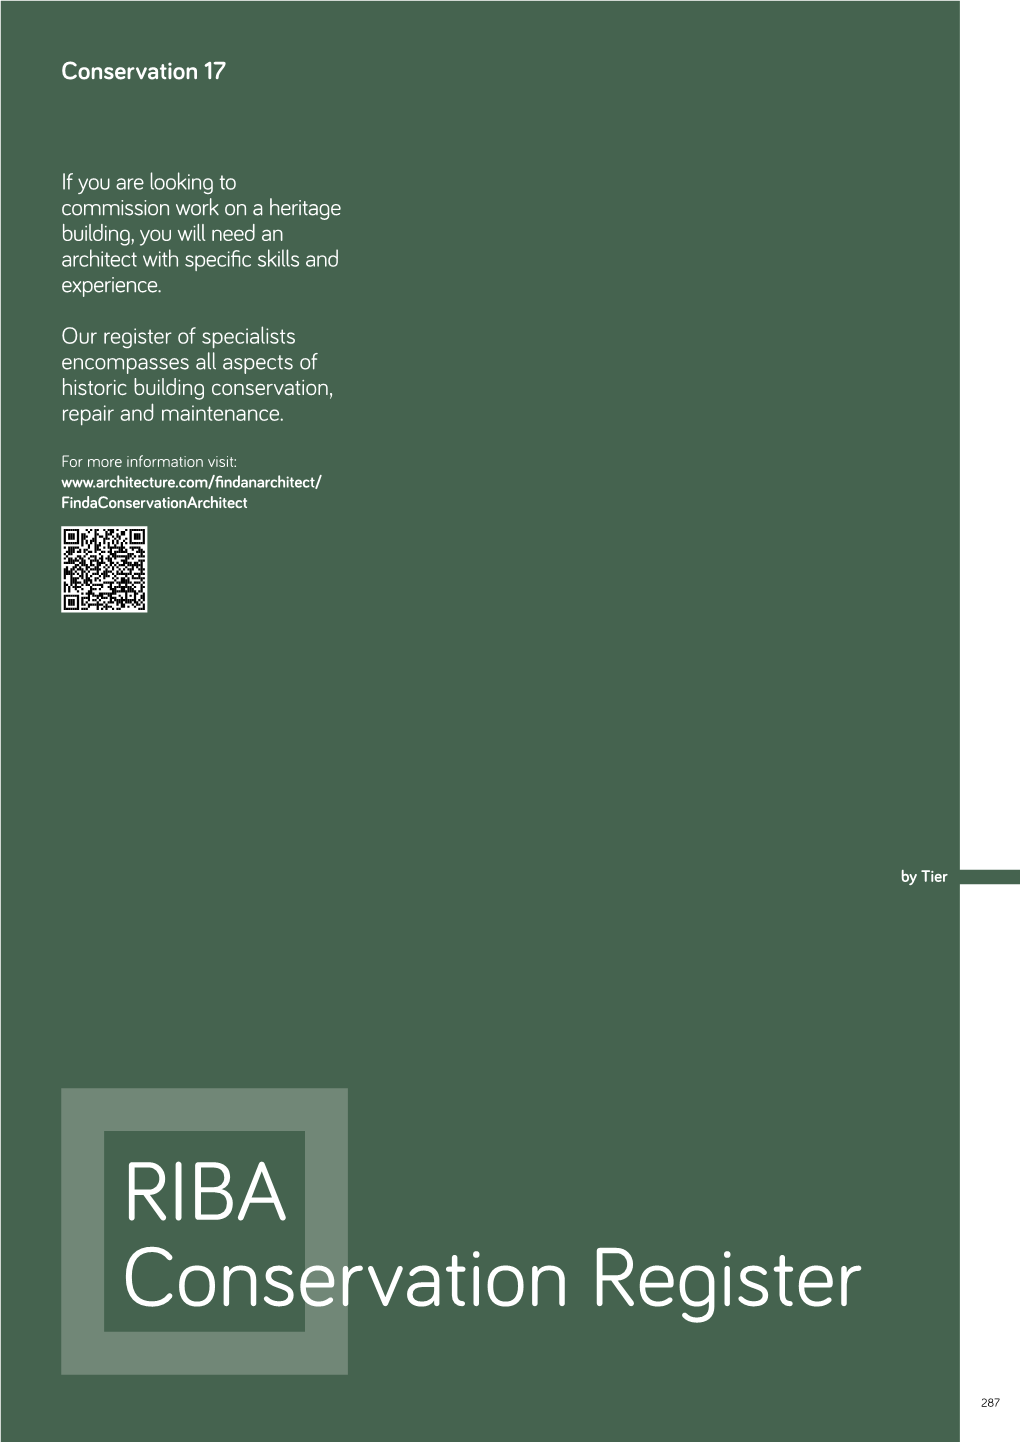 RIBA Conservation Register